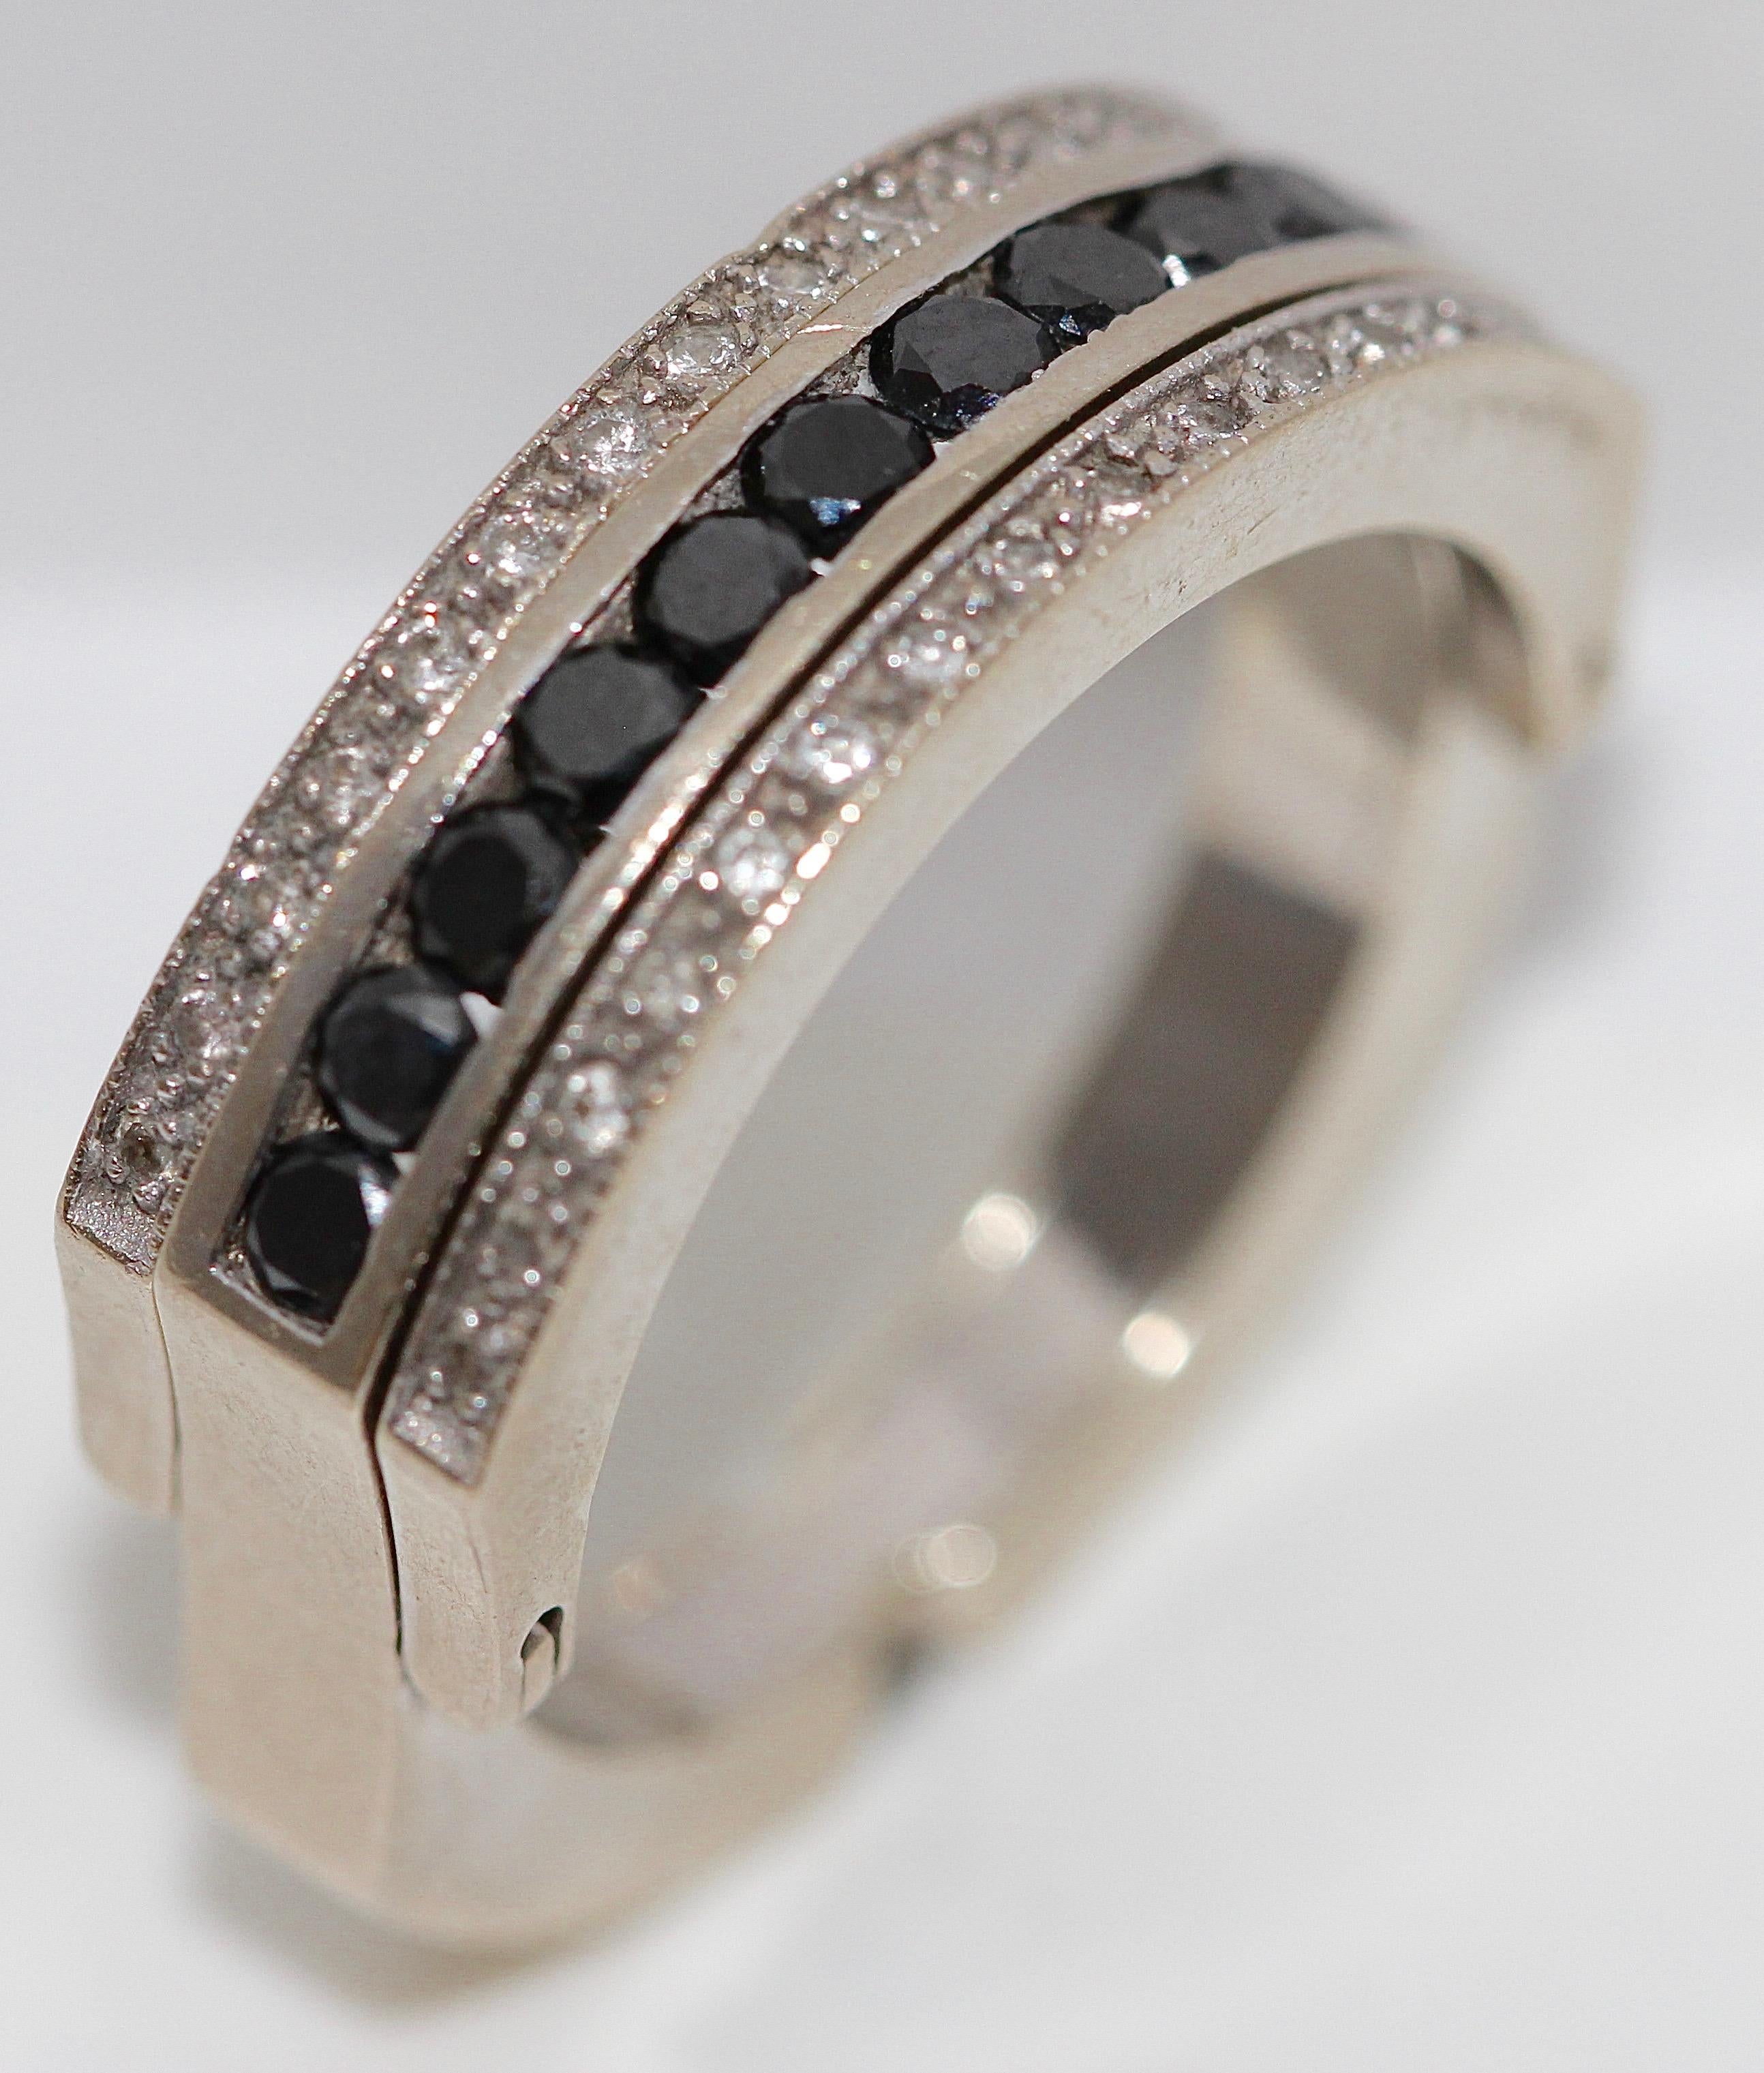 Élégante et très tendance bague d'éternité, de transformation, de mémoire en or blanc 18k avec diamants noirs et blancs.

Diamètre intérieur de 19 mm.